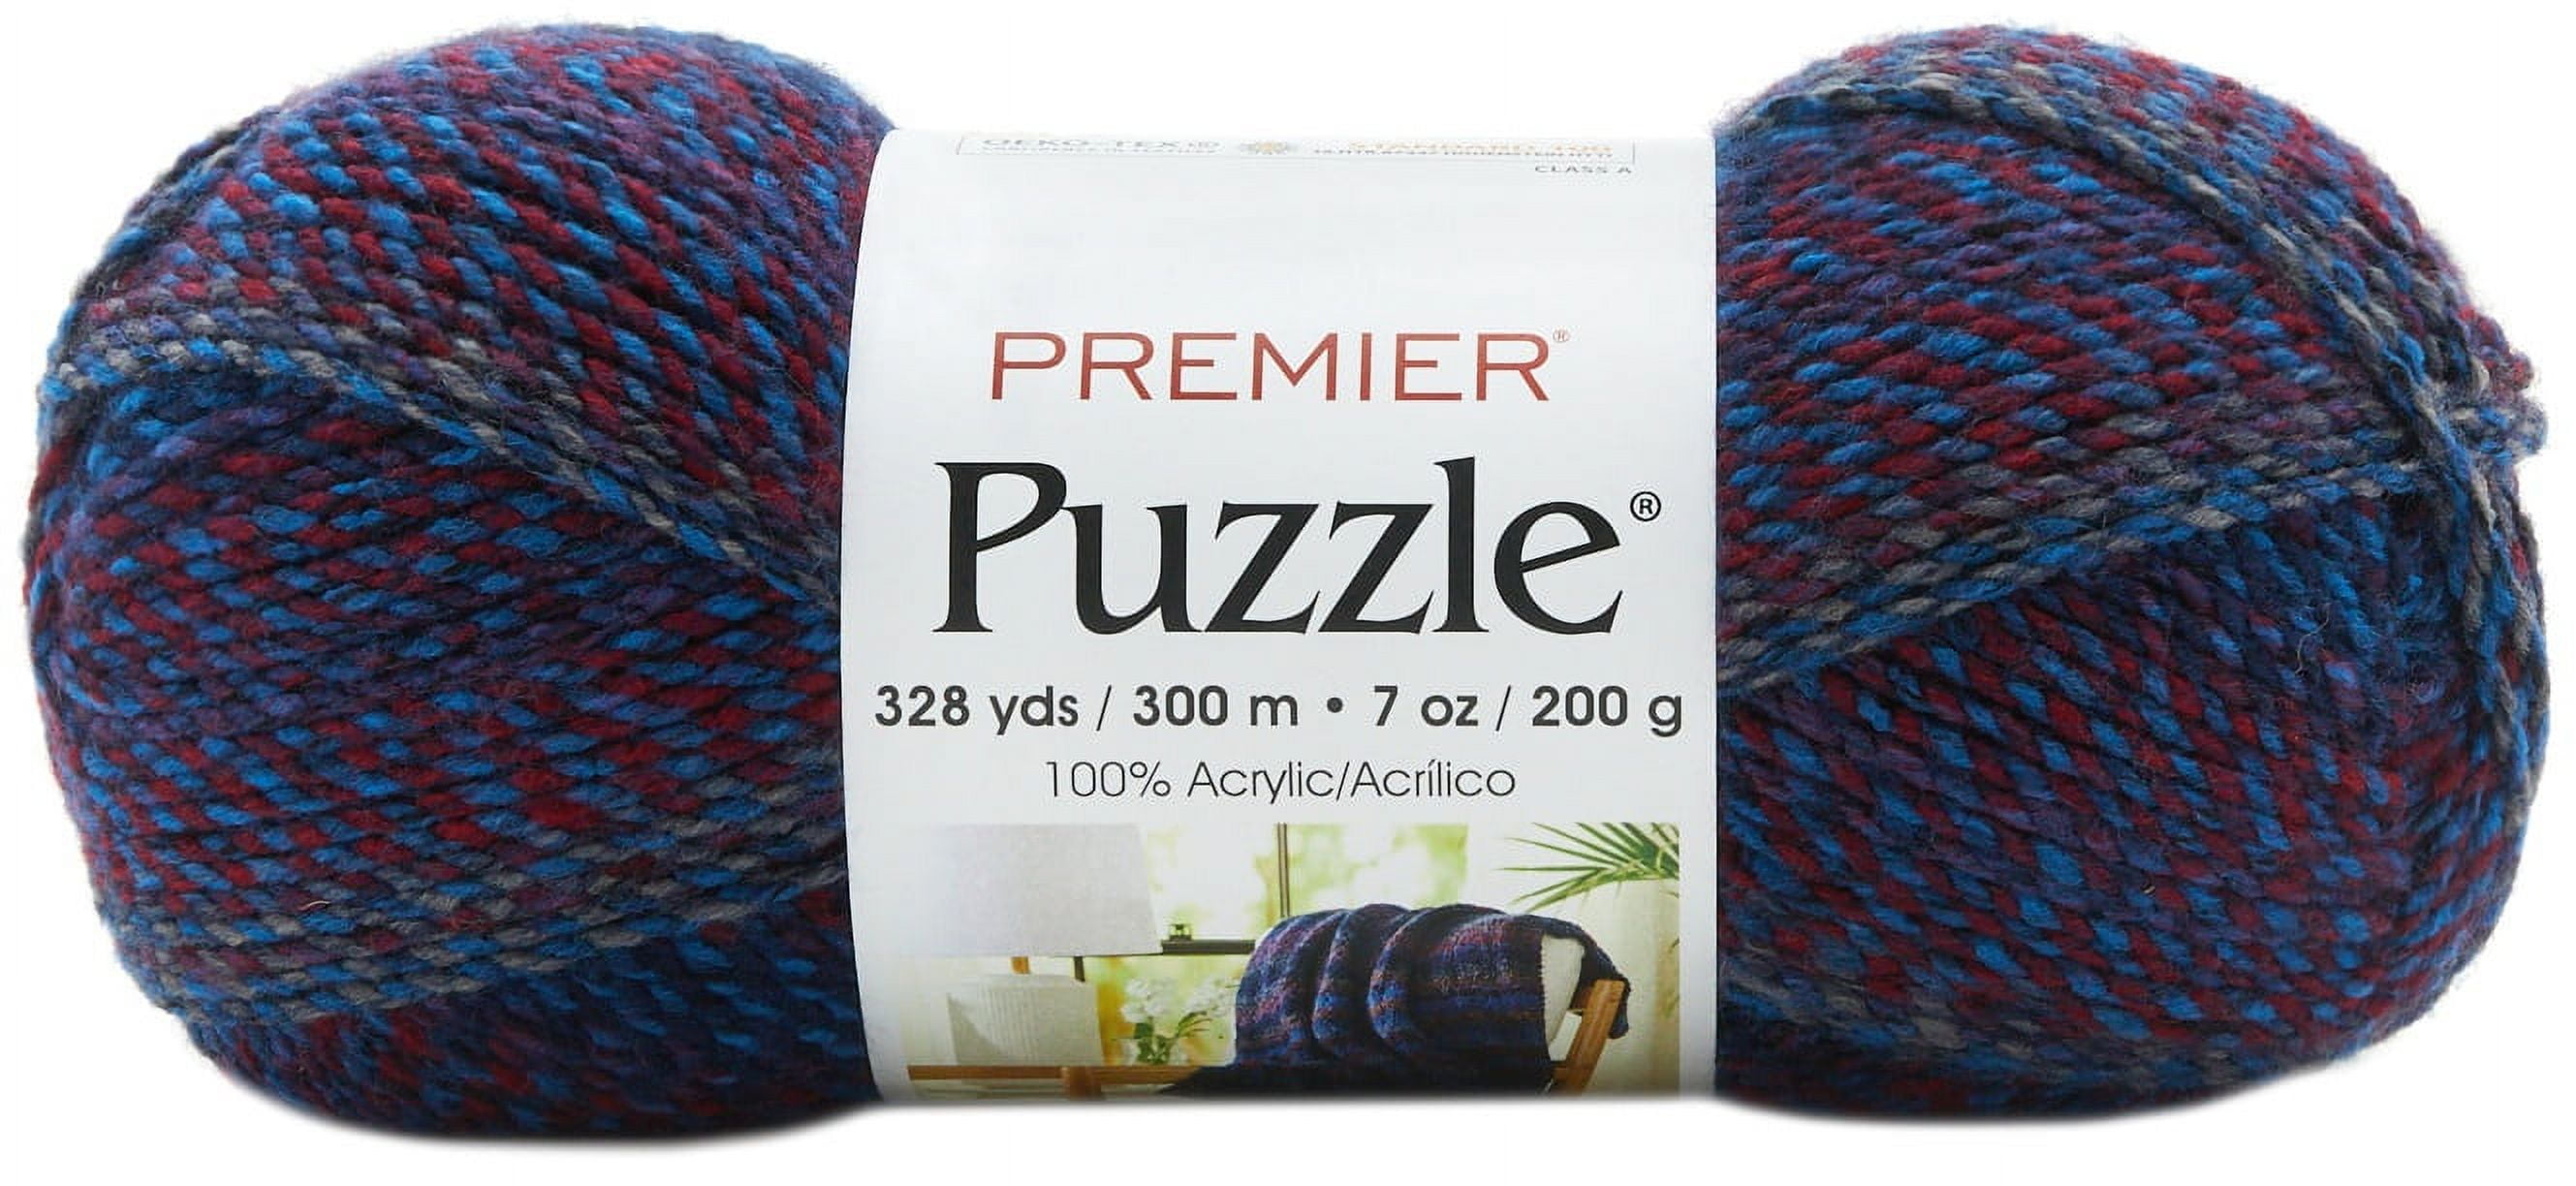 Premier Puzzle Shimmer-Riddle Shimmer